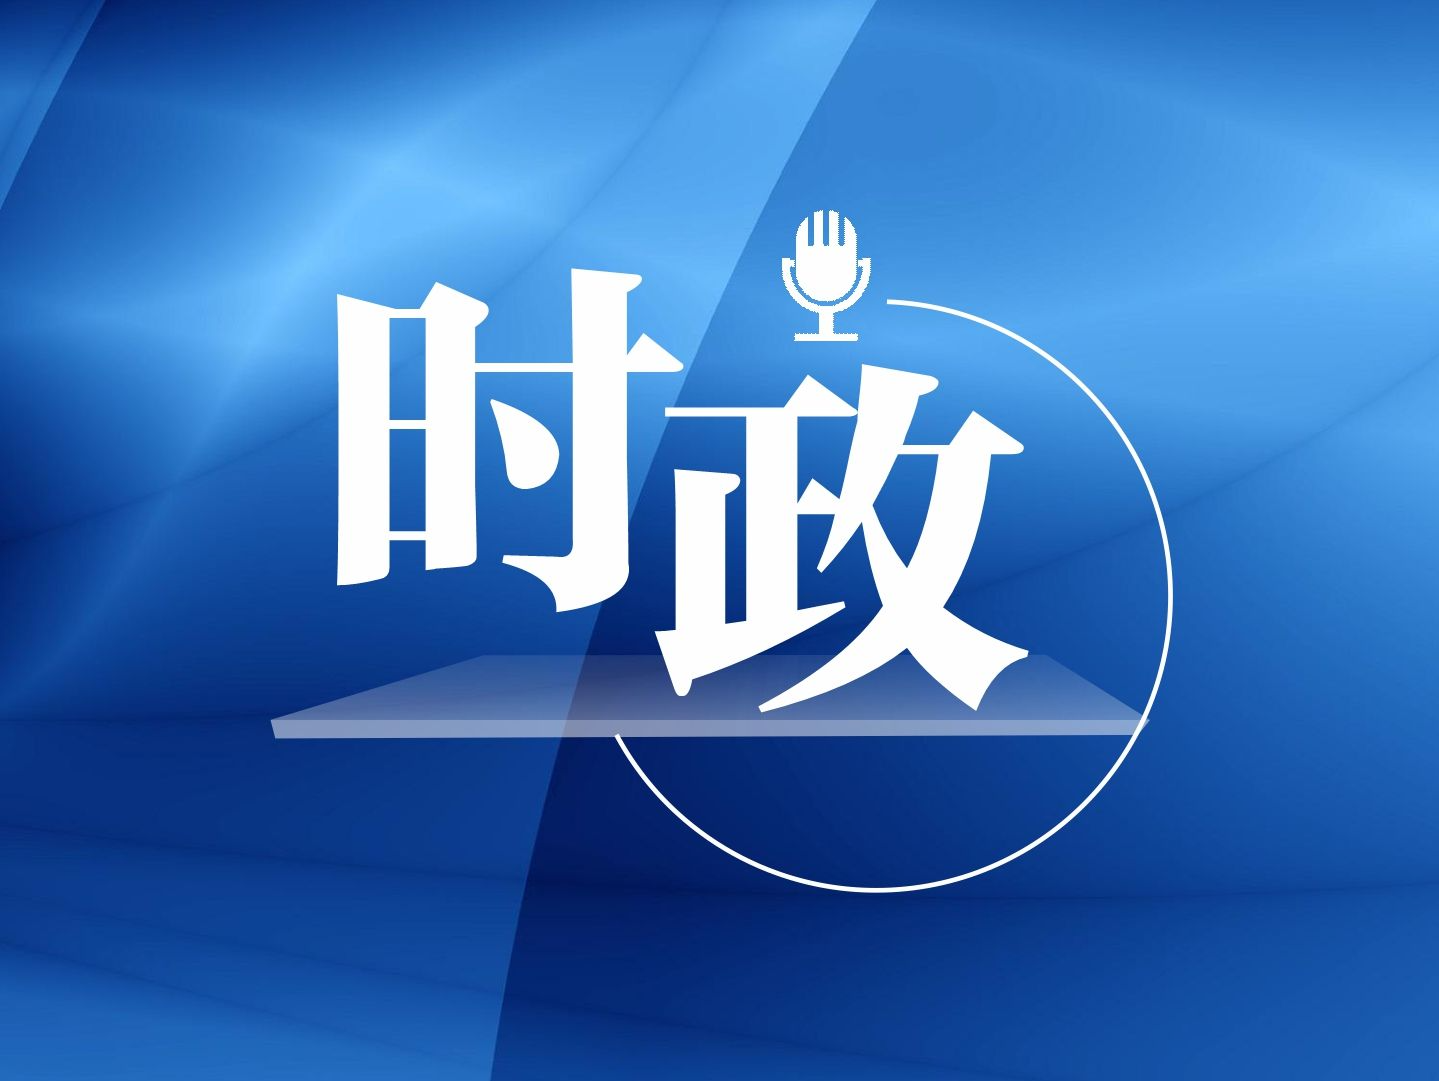 习近平将继续出席亚太经合组织第二十九次领导人非正式会议